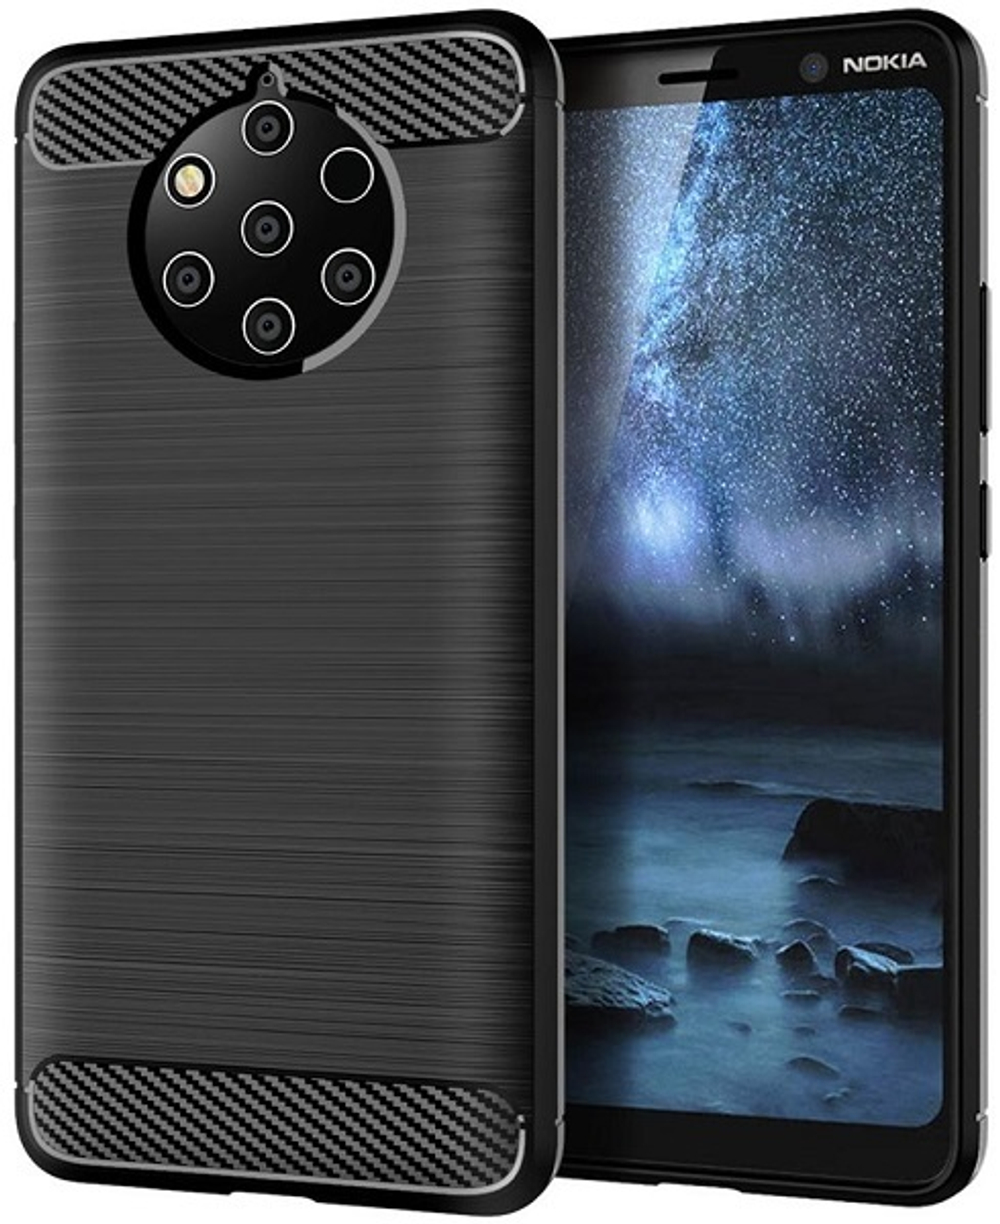 Чехол на Nokia 9 PureView цвет Black (черный), серия Carbon от Caseport